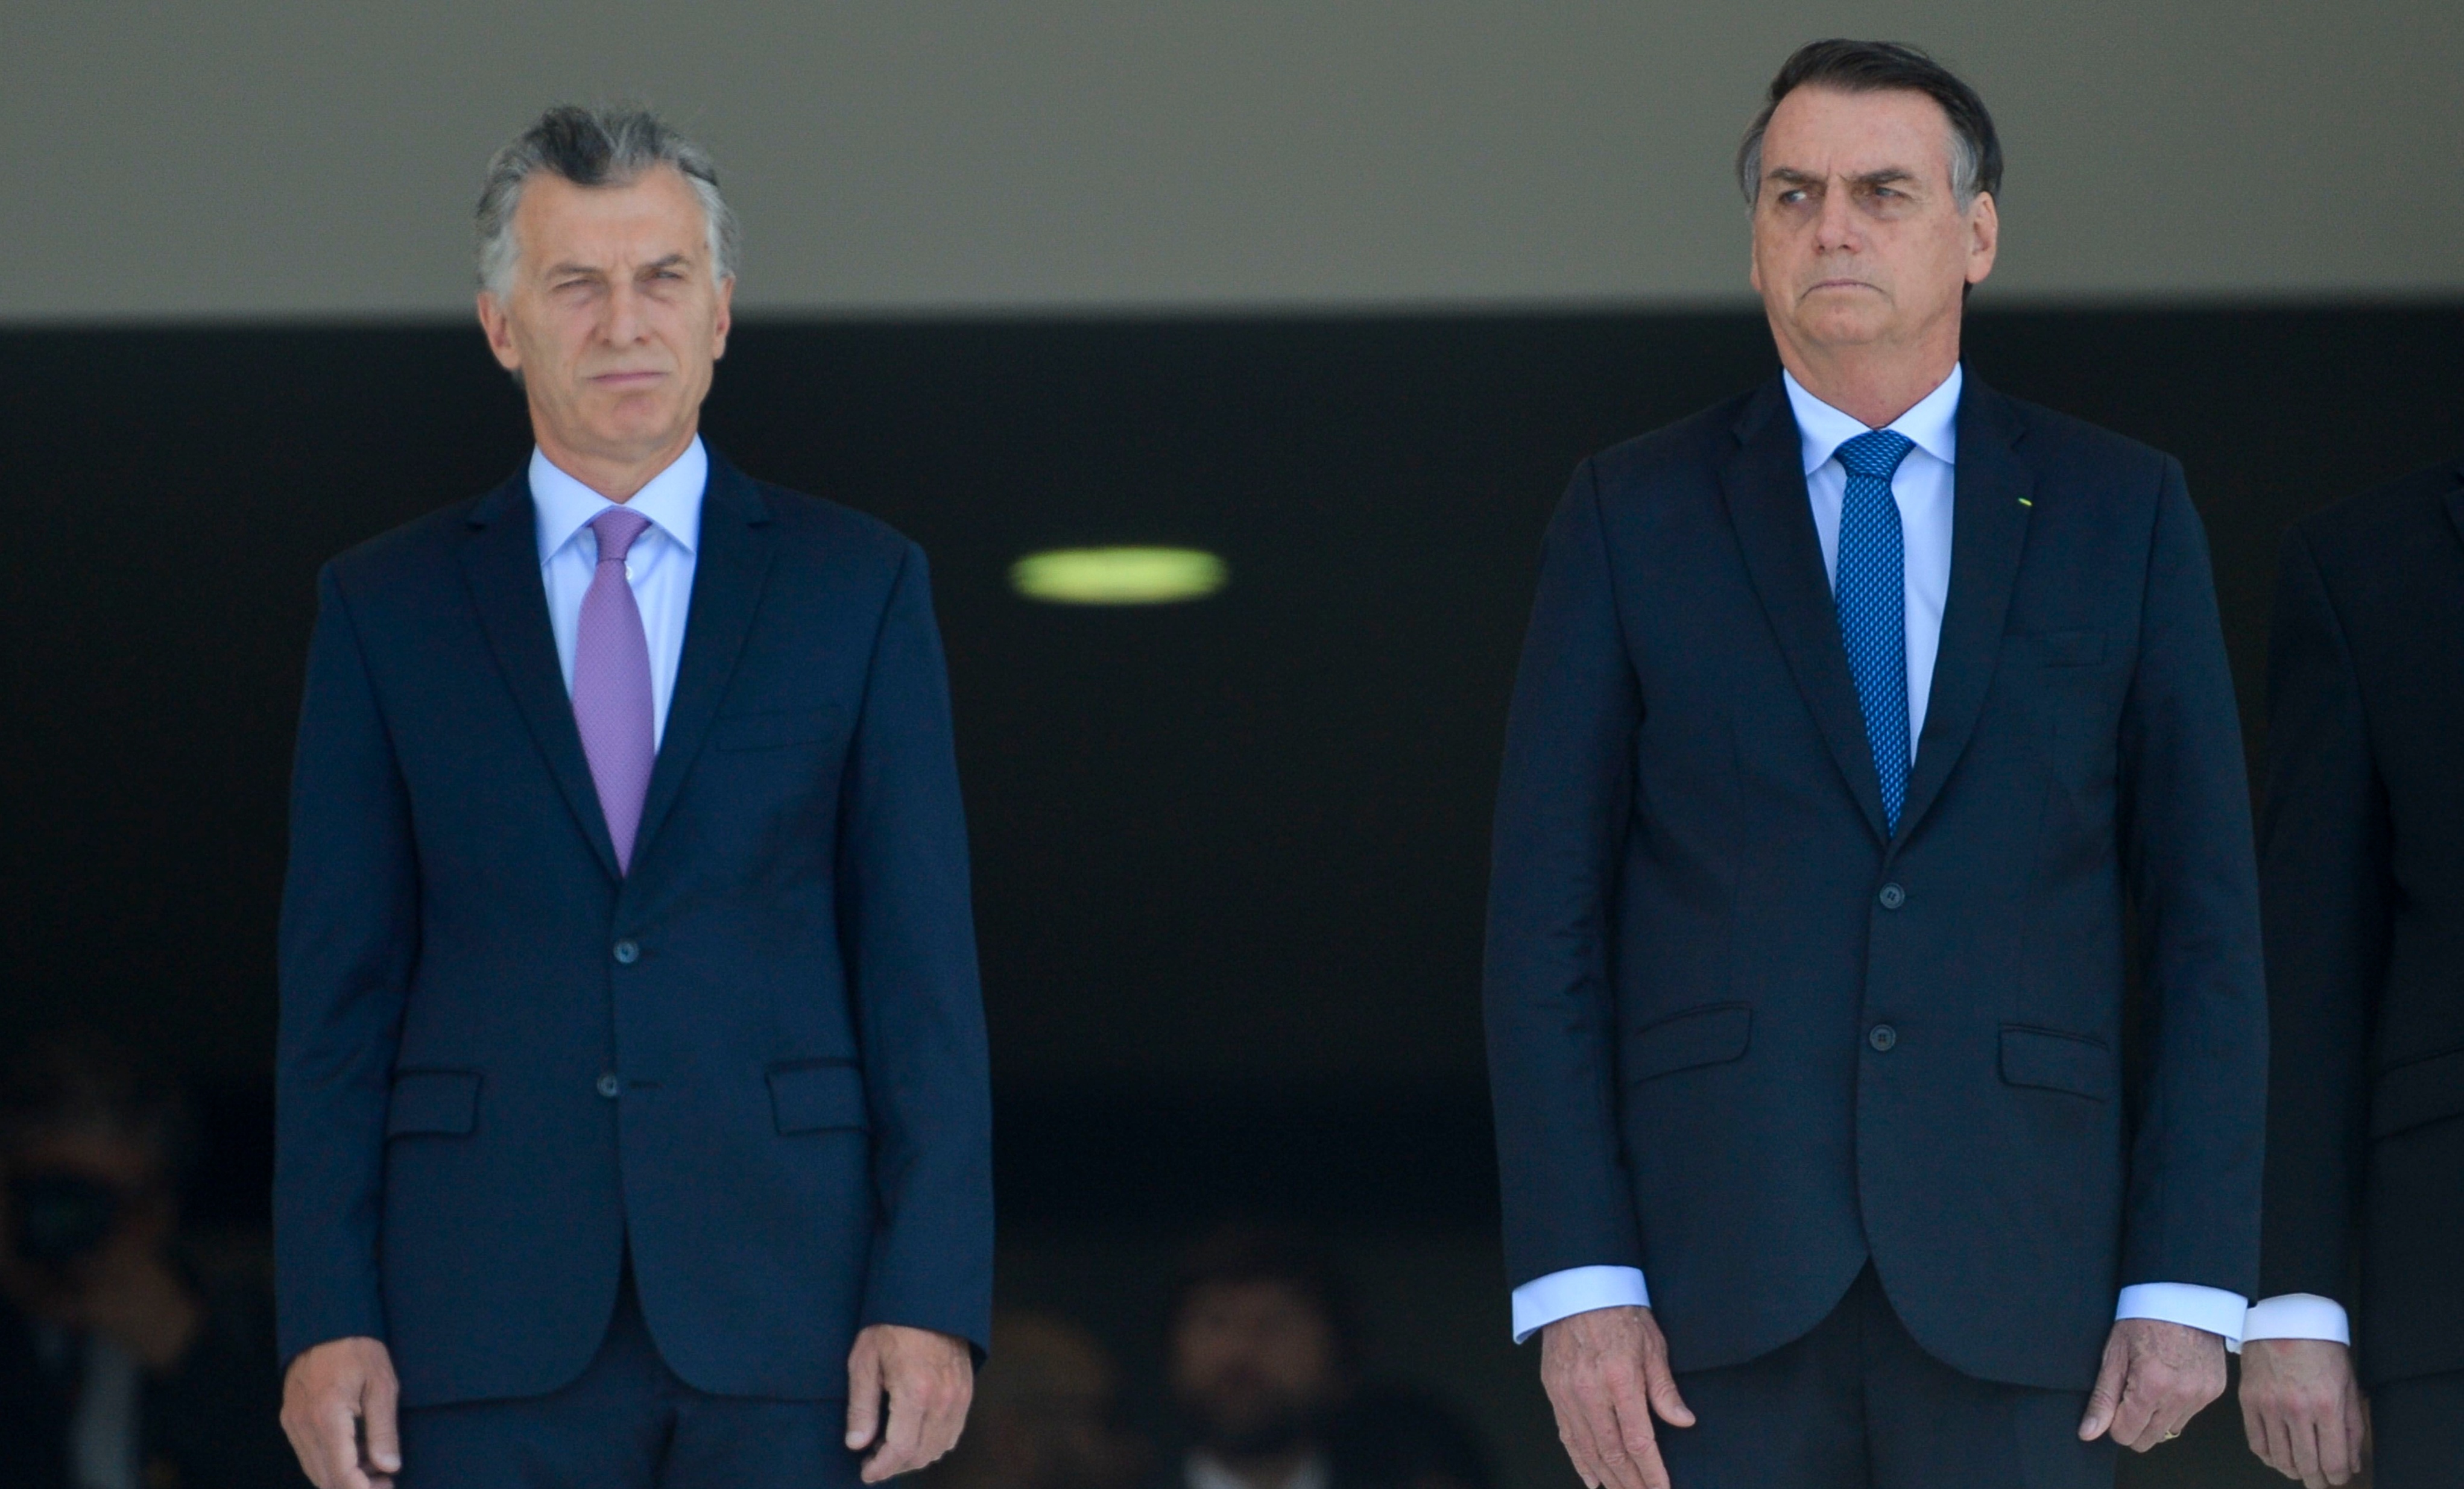 Agenda neoliberal de Macri leva FMI a “avaliar” desastre econômico argentino